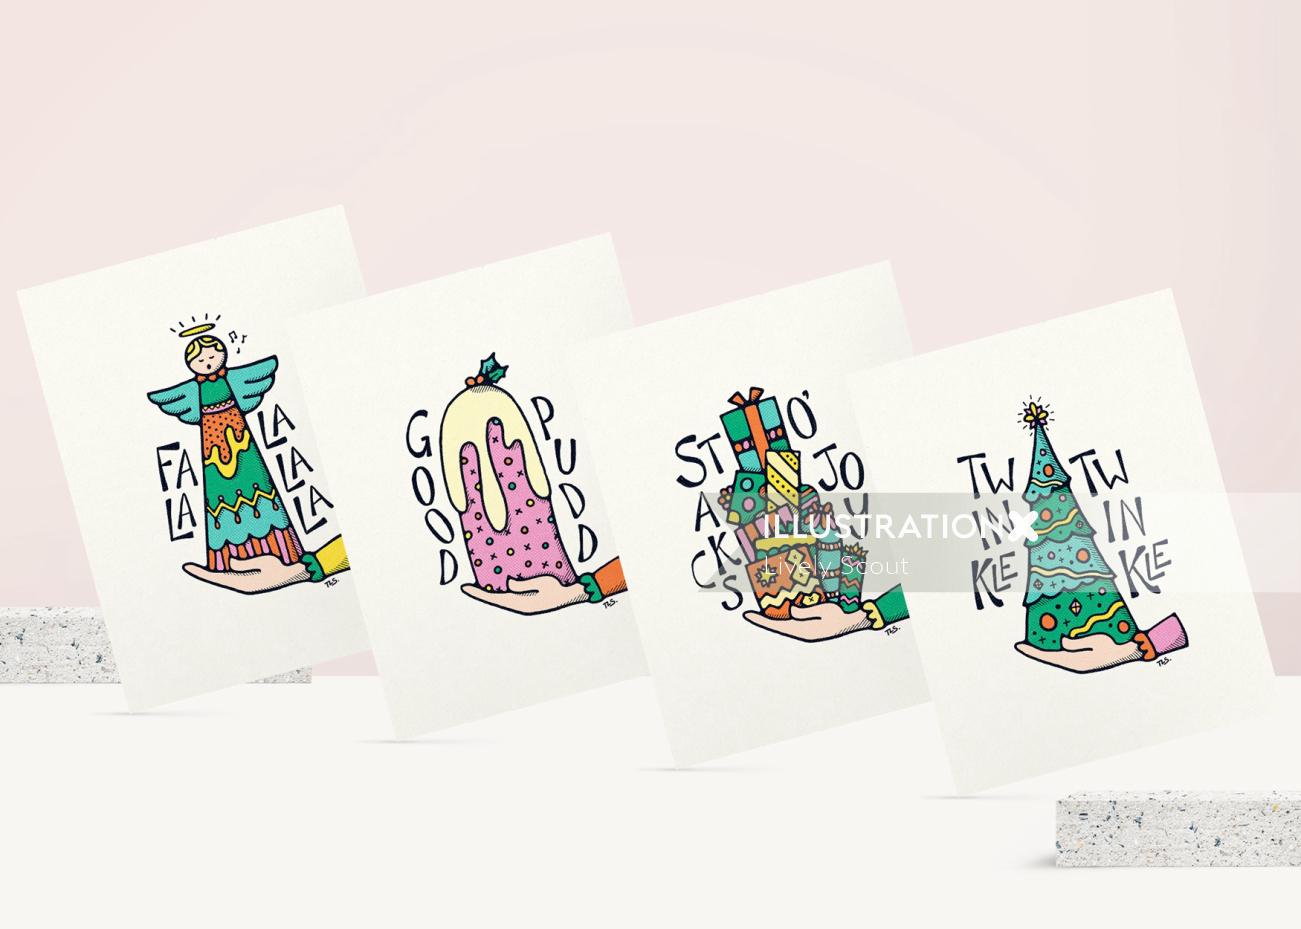 Serie de ilustraciones de tarjetas de Navidad: ángulo, pudín, pila de regalos y árbol de Navidad